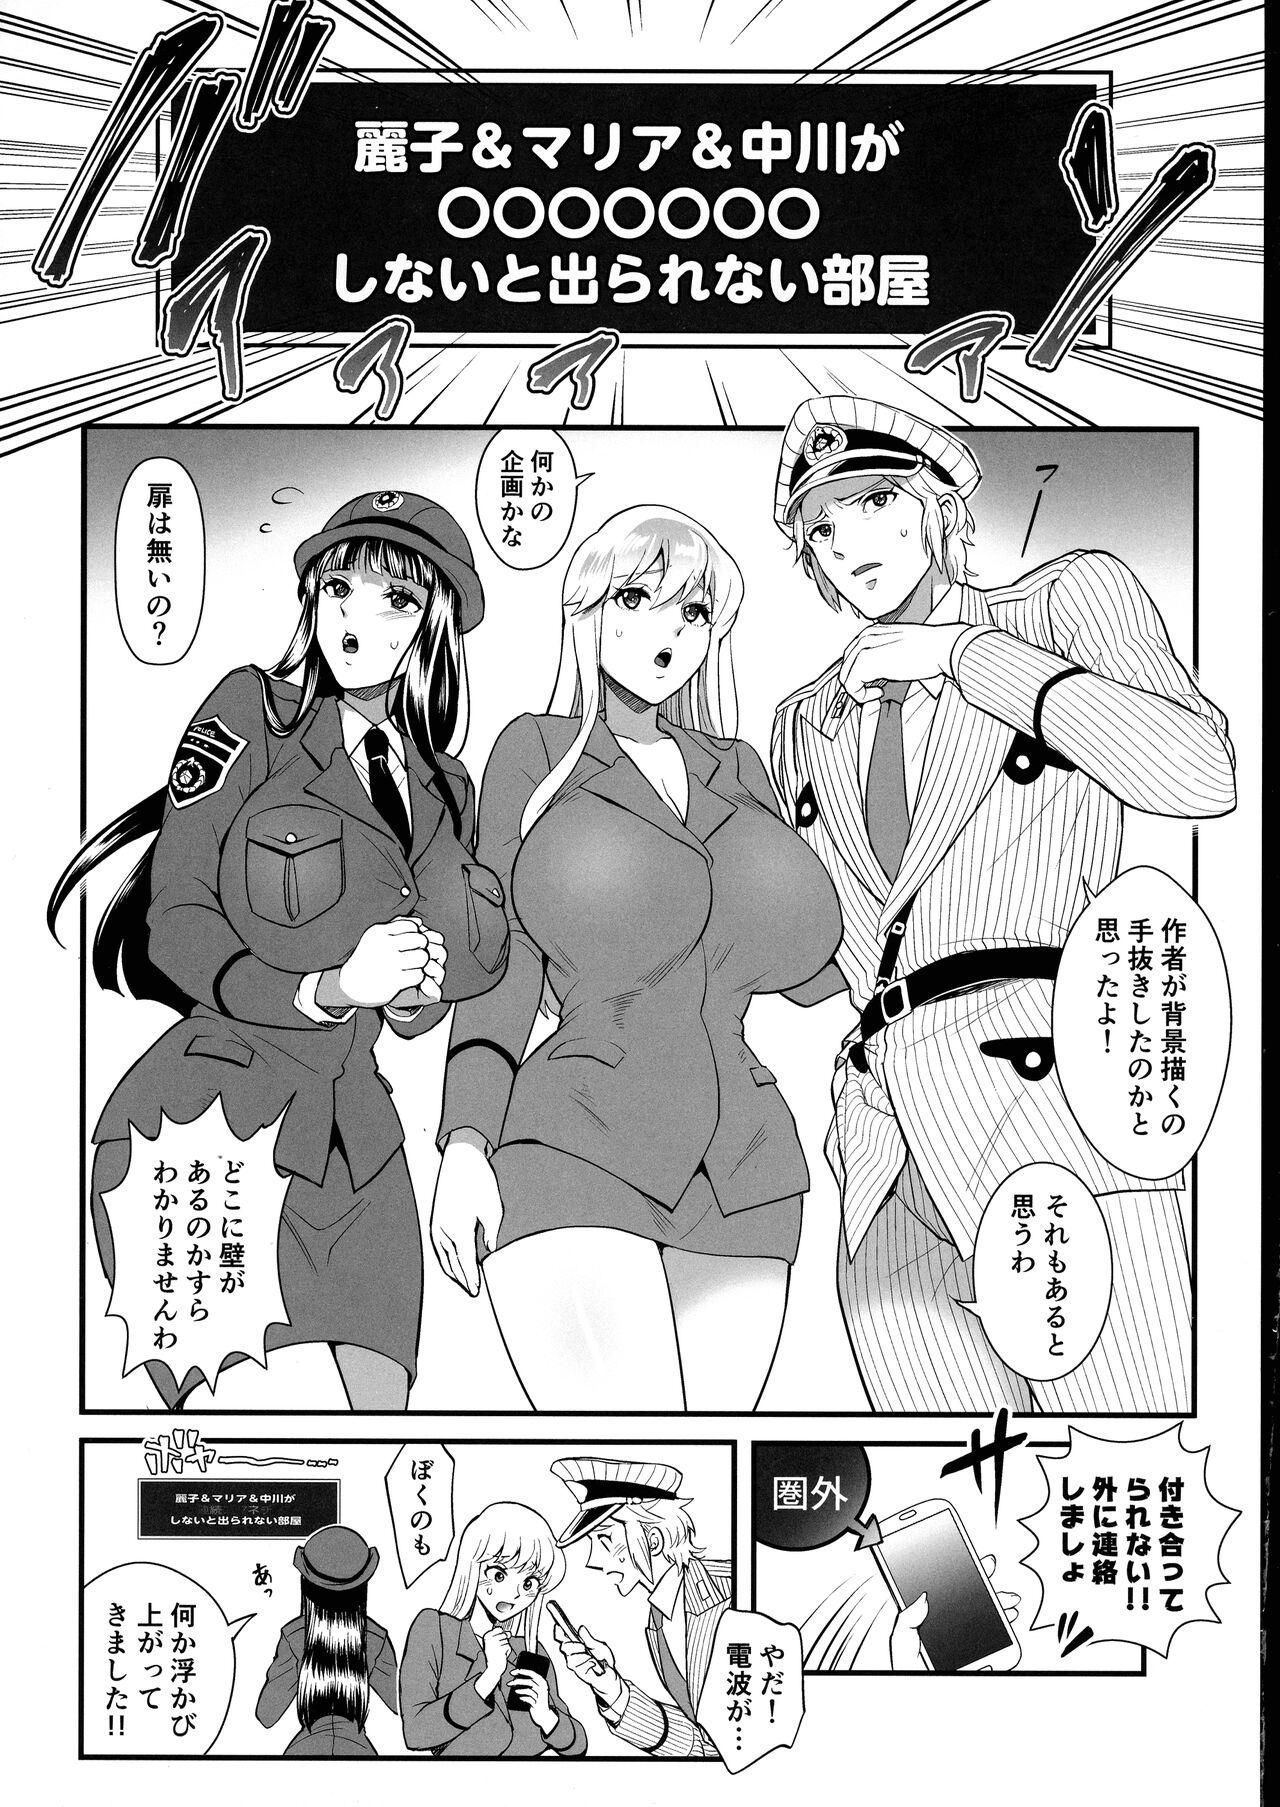 Verified Profile Reiko & Maria & Nakagawa ga Ogeretsuna Koto o Shinai to derarenai Heya no Maki - Kochikame Juicy - Page 4